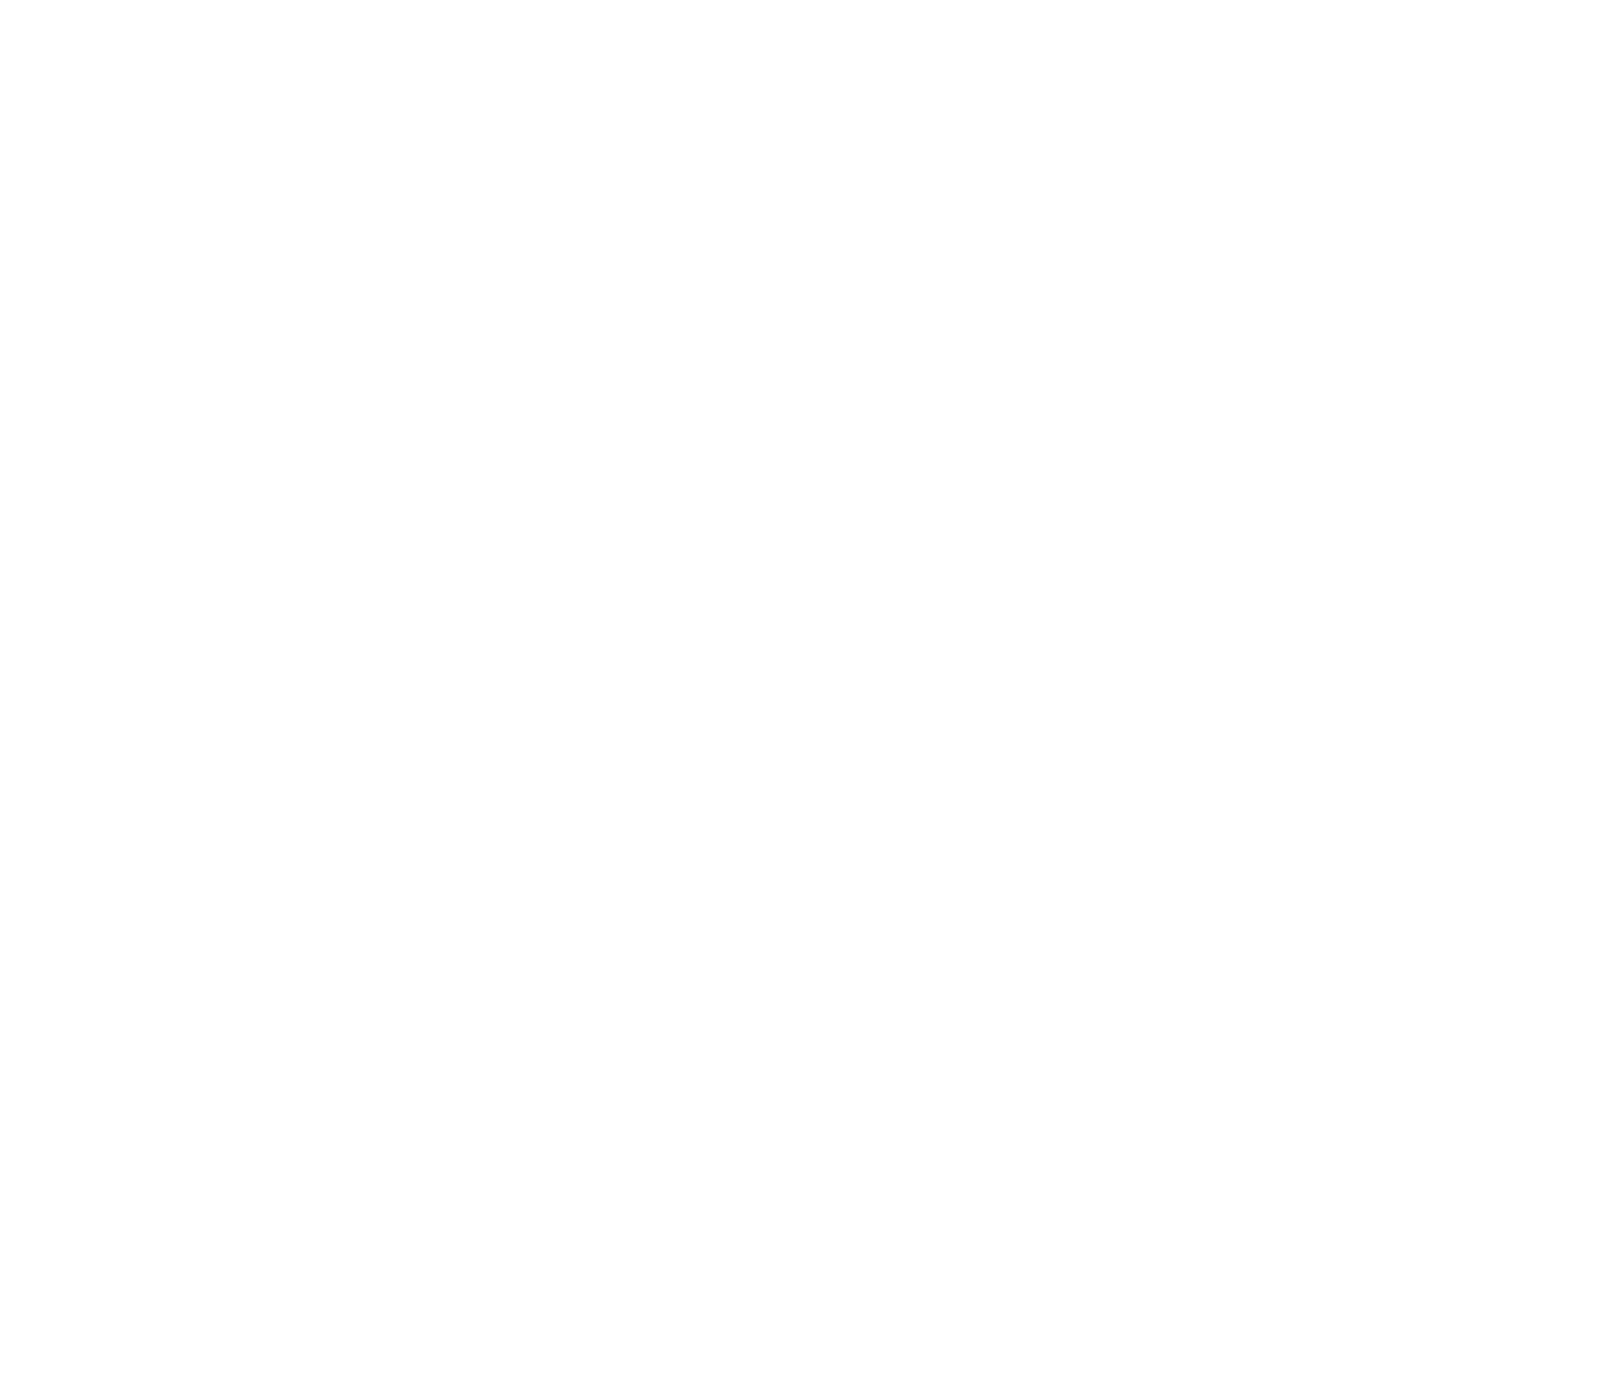 Hi, I'm Day